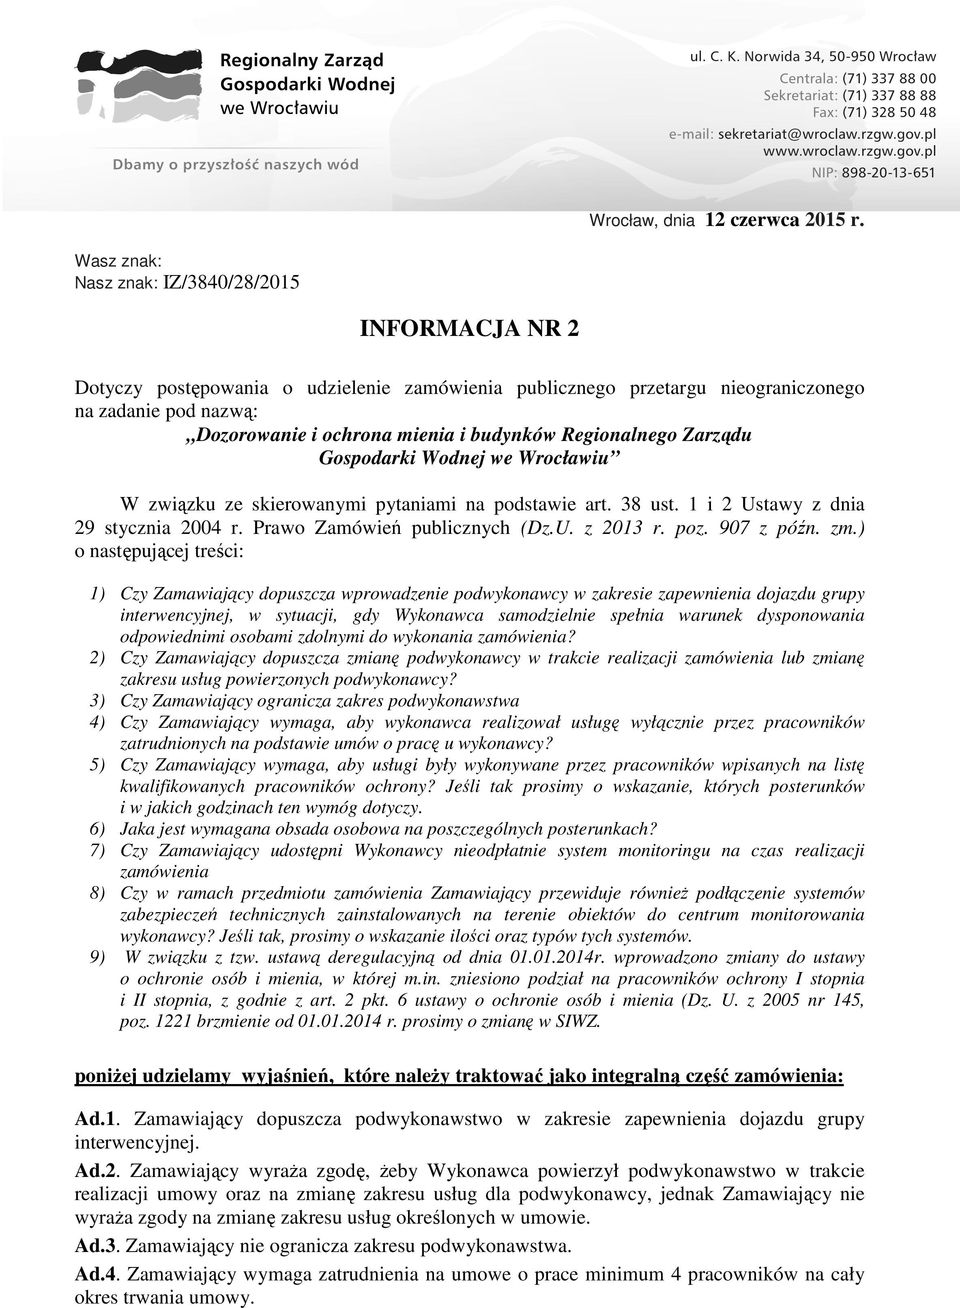 Regionalnego Zarządu Gospodarki Wodnej we Wrocławiu W związku ze skierowanymi pytaniami na podstawie art. 38 ust. 1 i 2 Ustawy z dnia 29 stycznia 2004 r. Prawo Zamówień publicznych (Dz.U. z 2013 r.